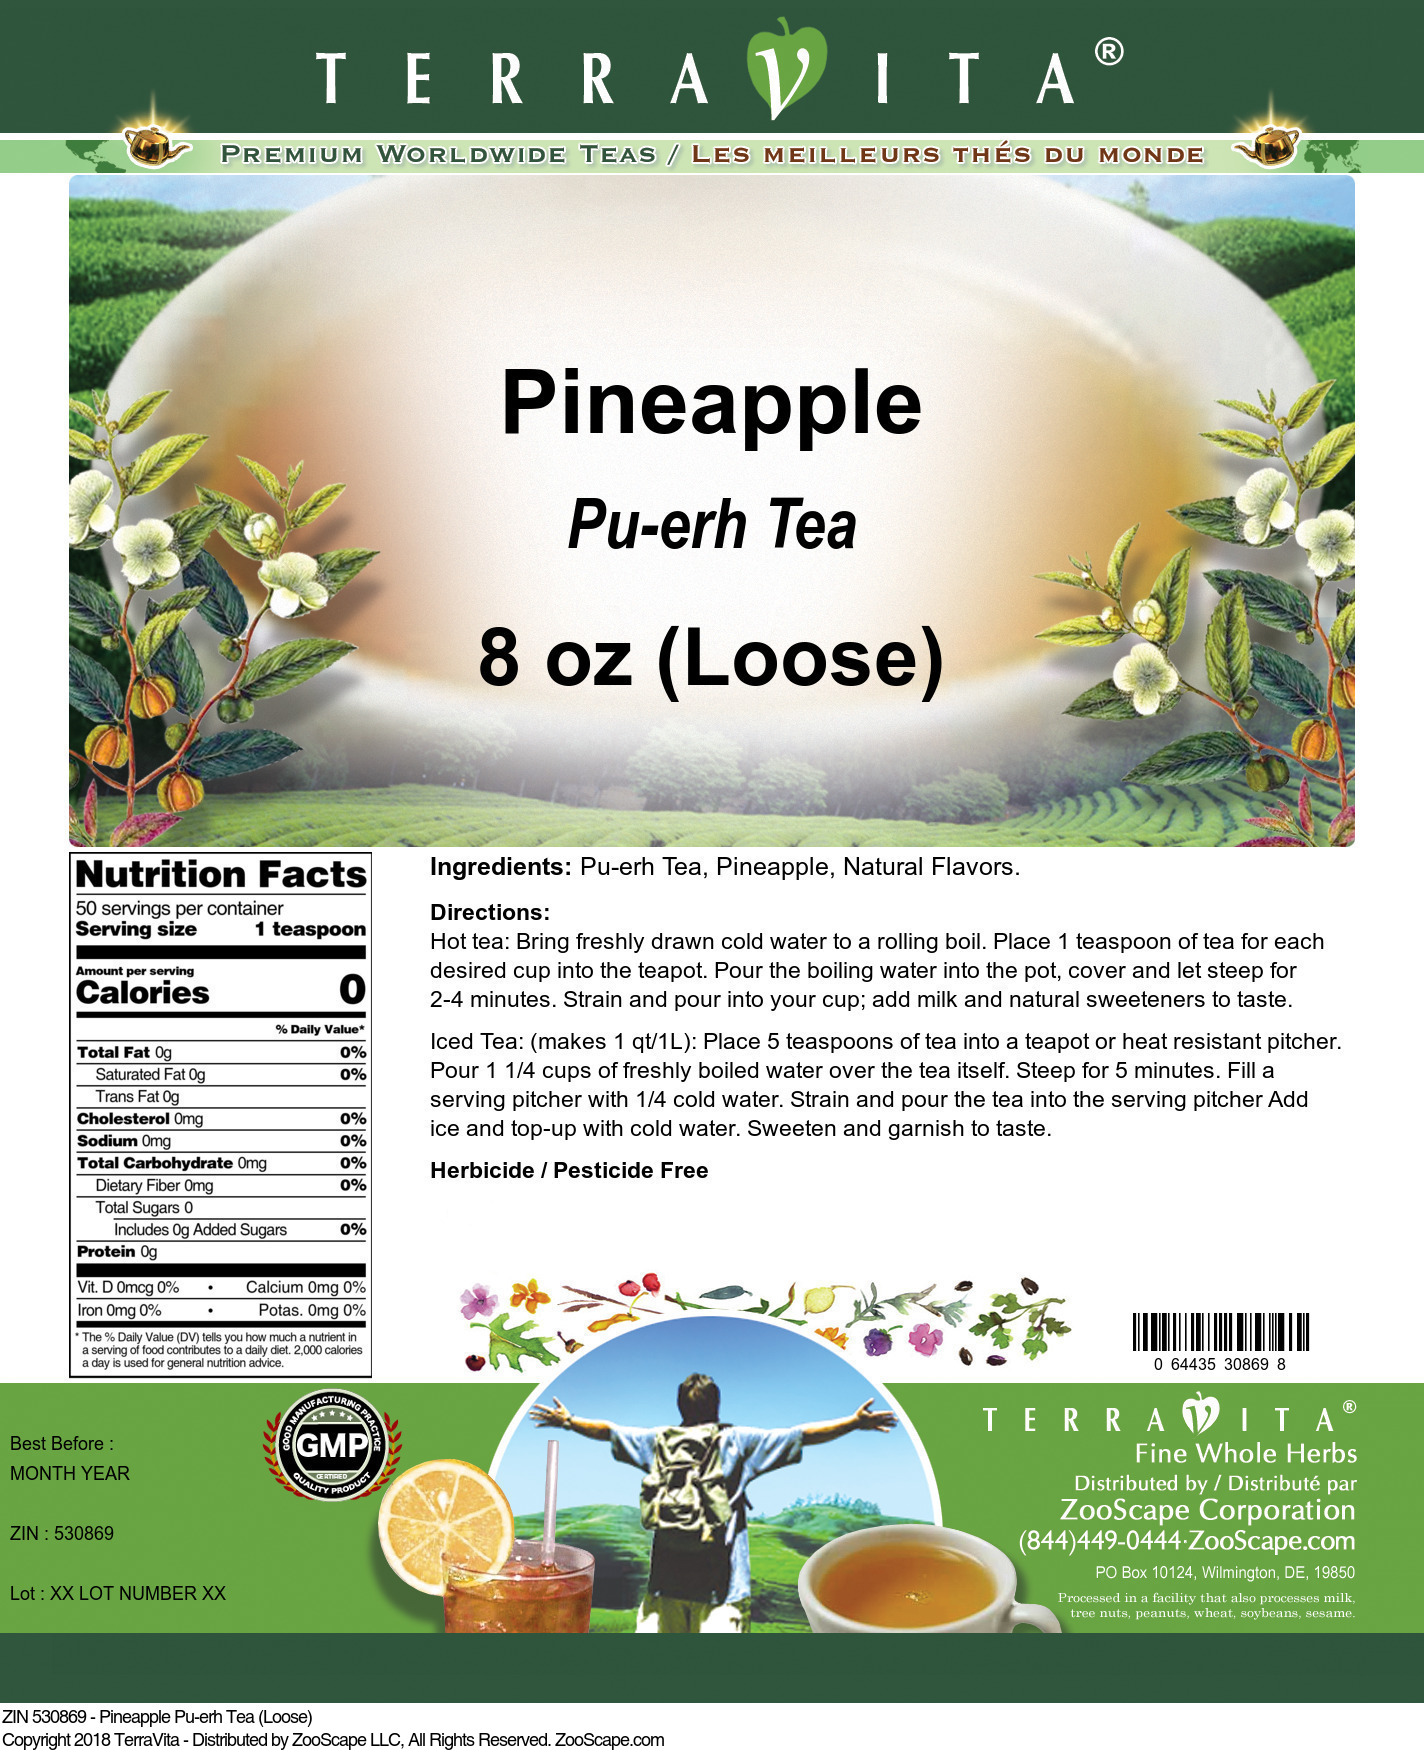 Pineapple Pu-erh Tea (Loose) - Label